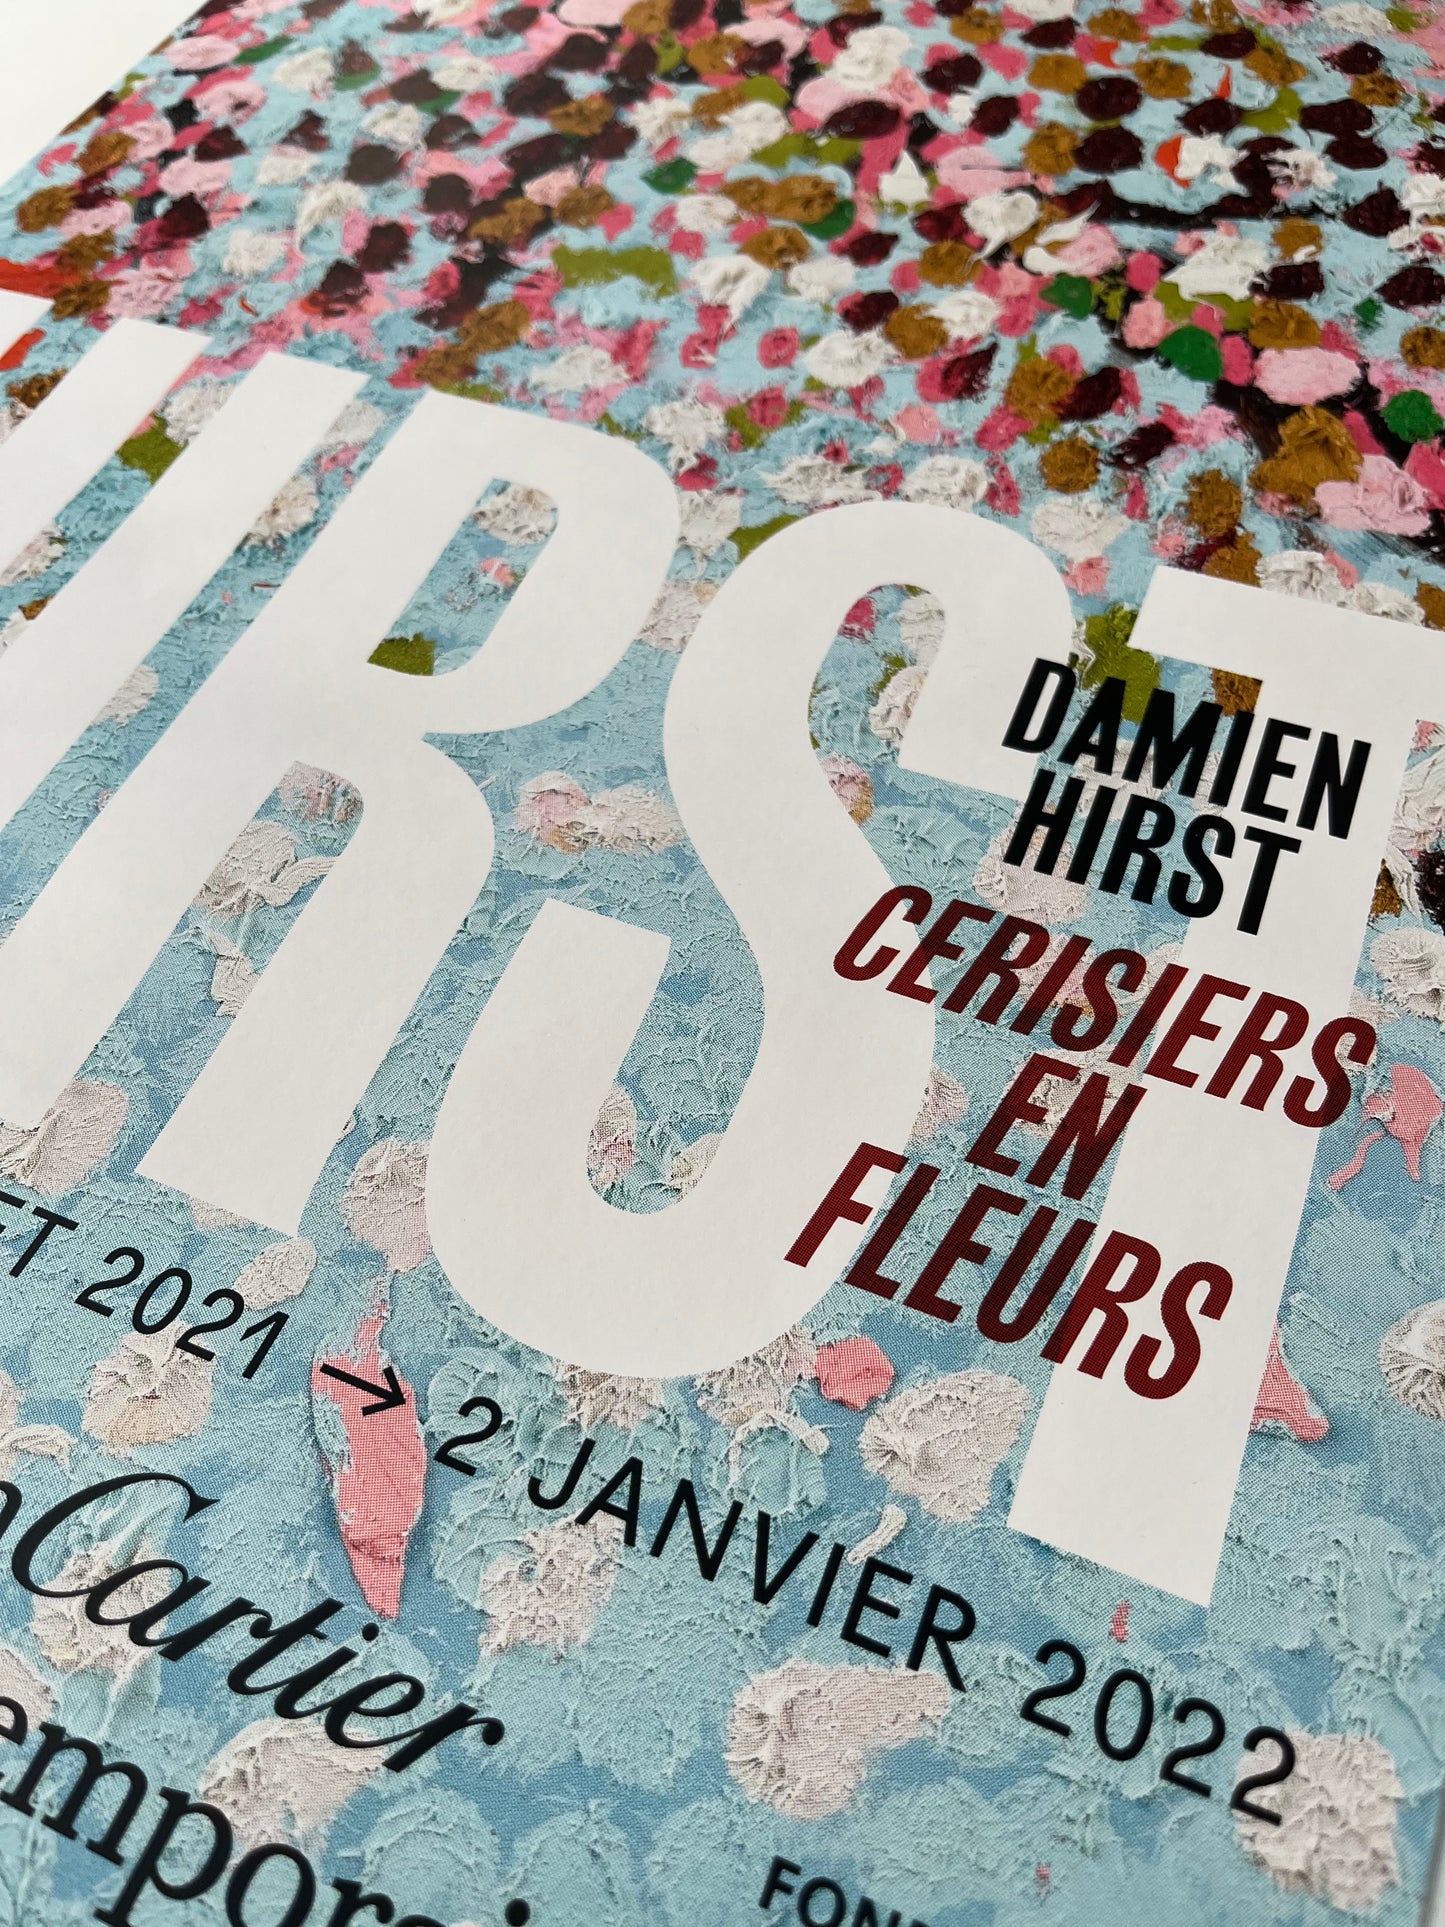 Damien Hirst x Fondation Cartier Paris© “Cherry blossoms”, Original exhibition poster